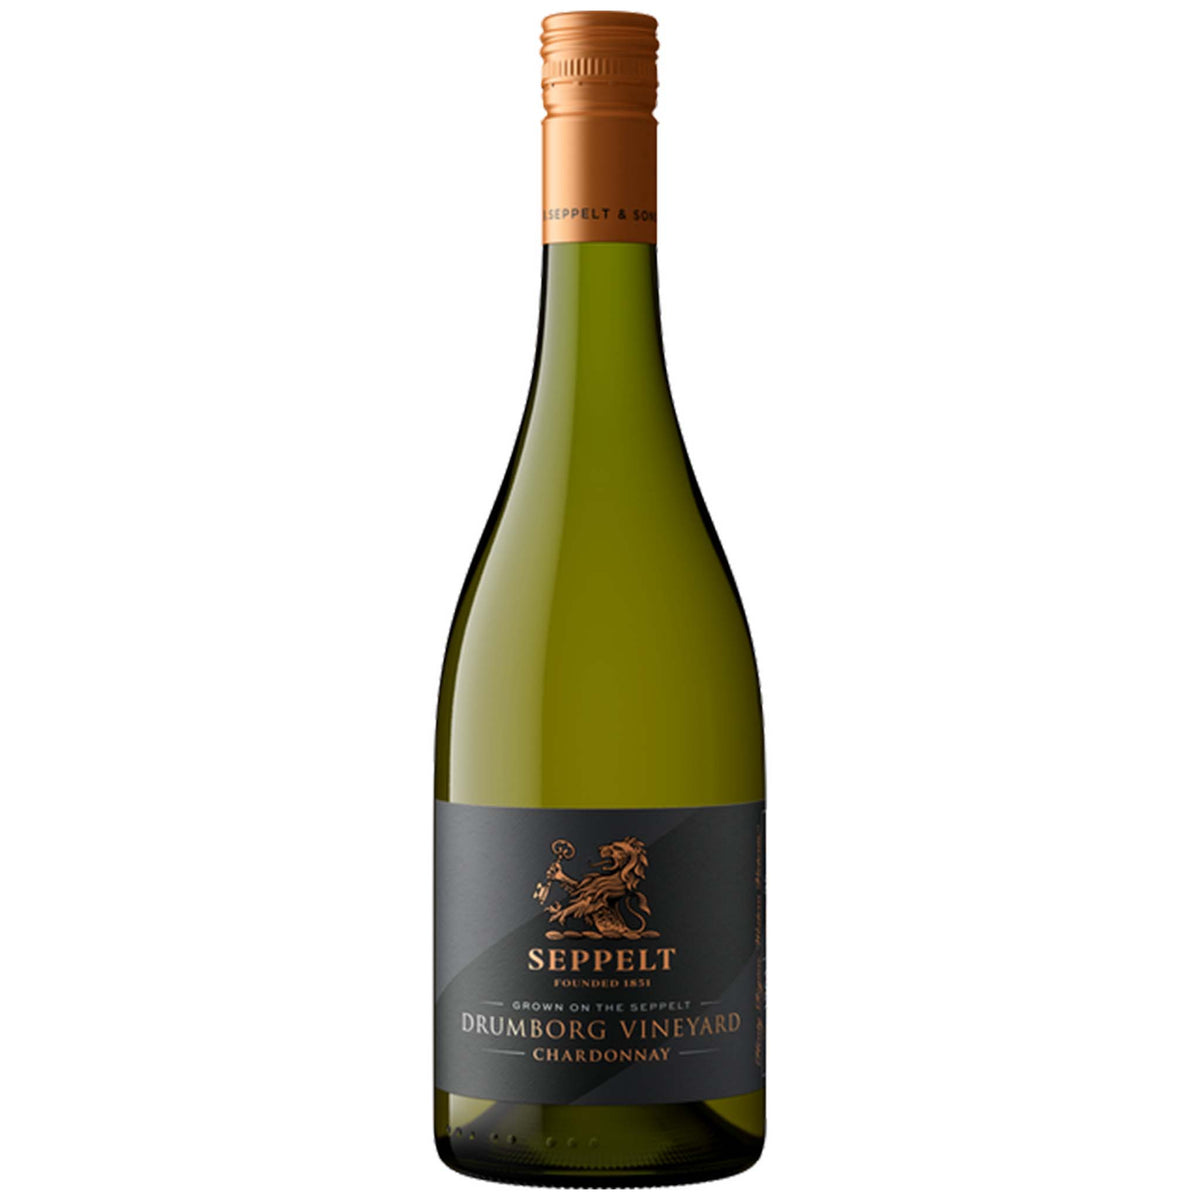 Seppelt-Drumborg-Vineyard-Chardonnay-2015